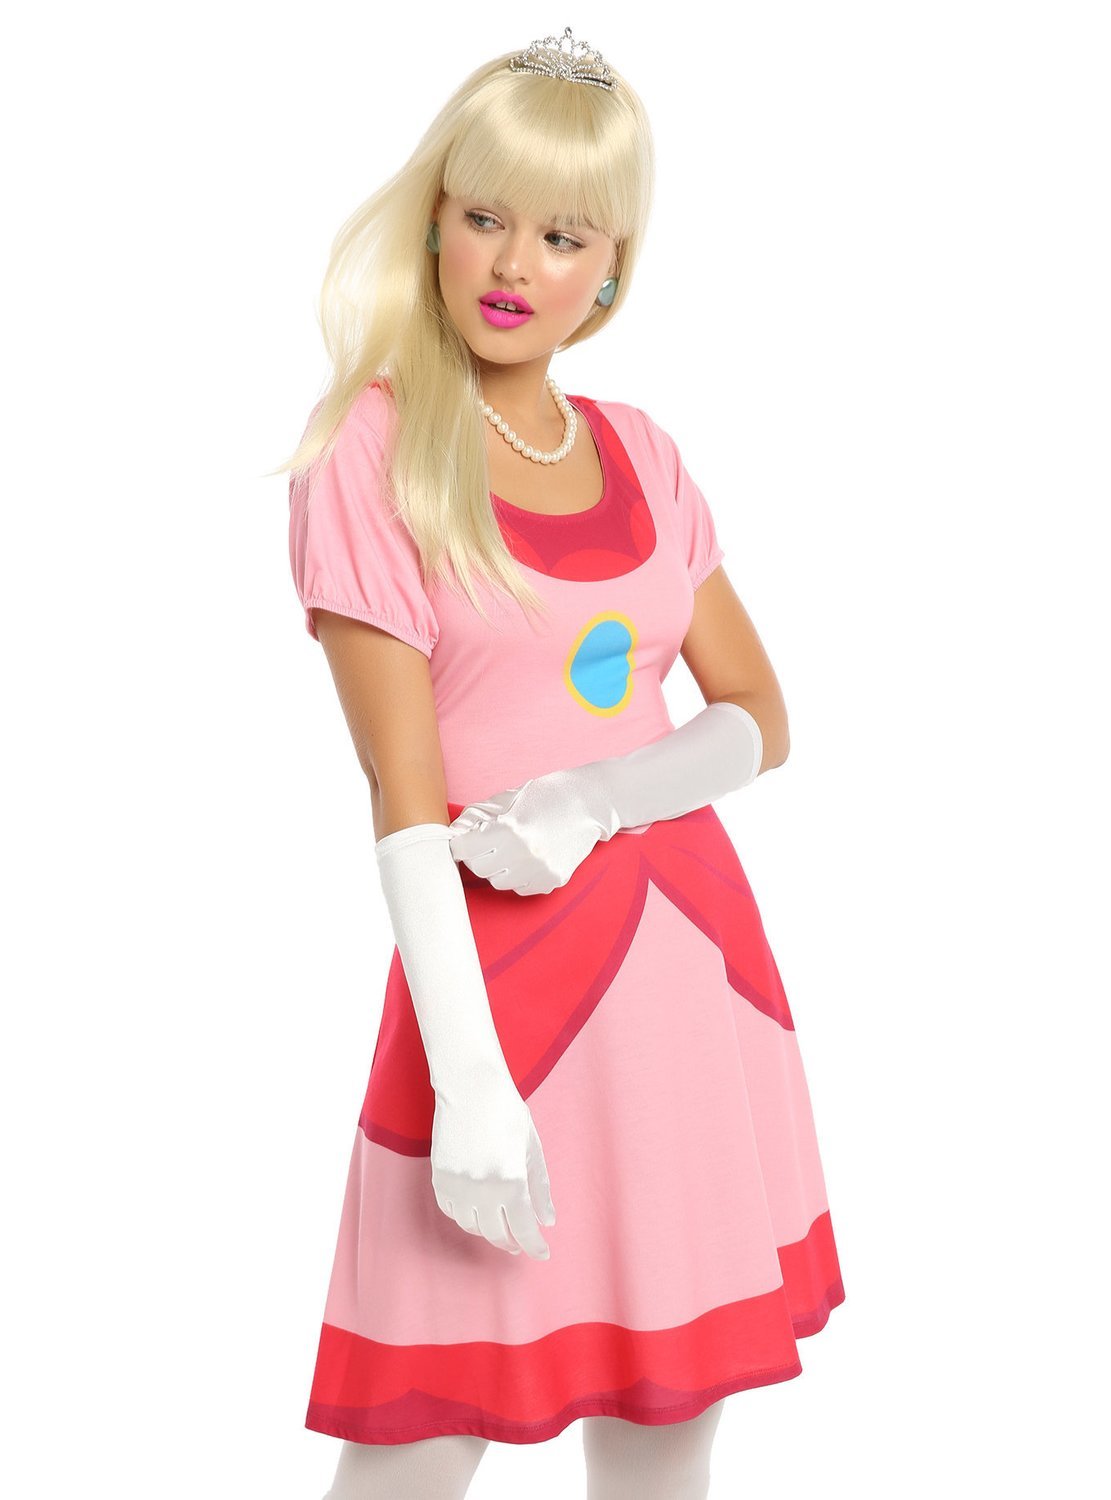 Vestido Cosplay Princesa Peach